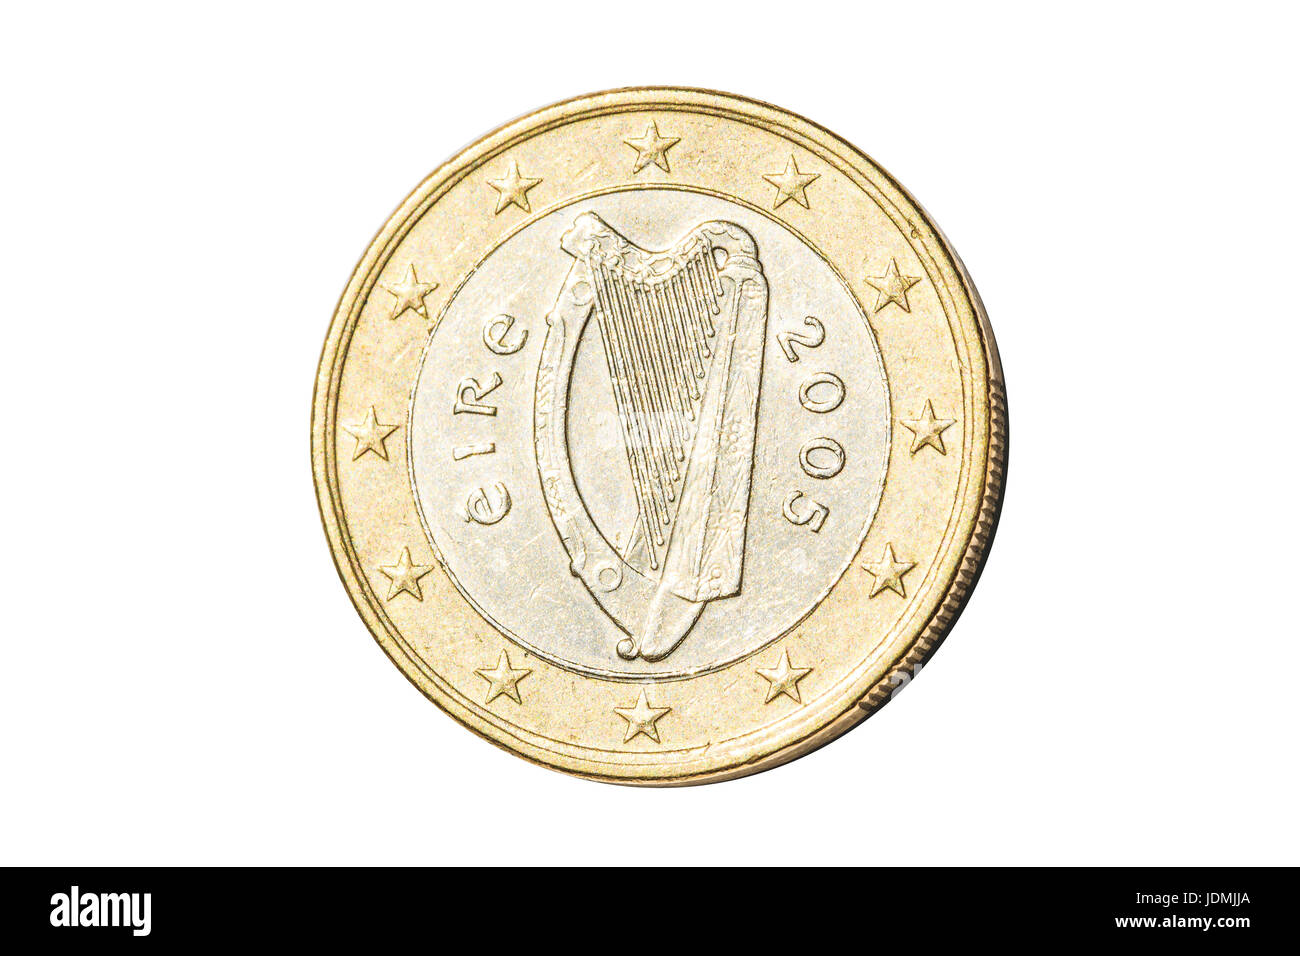 Irish one euro coin Stock Photo